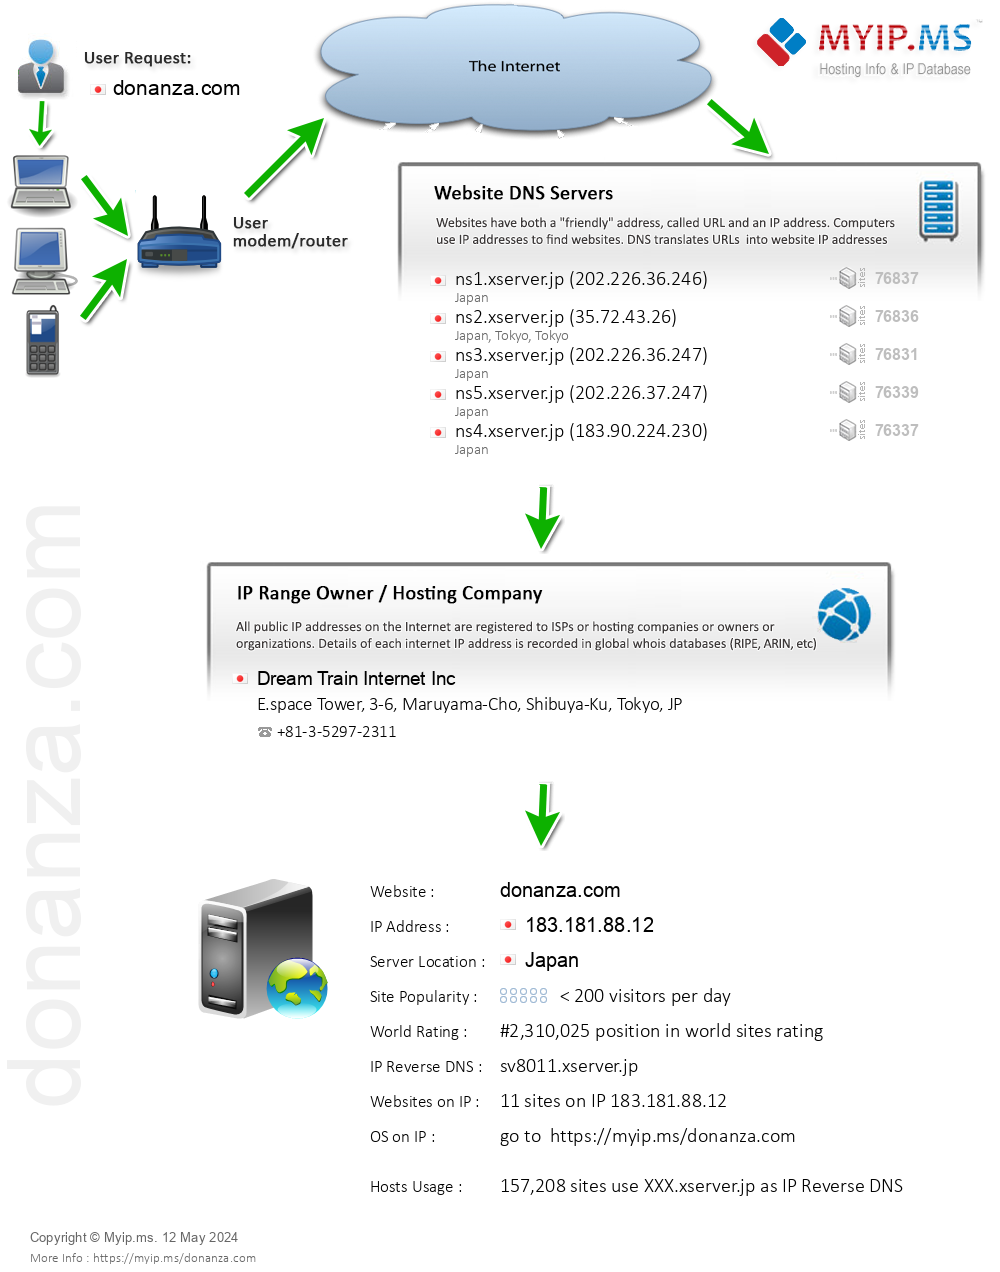 Donanza.com - Website Hosting Visual IP Diagram